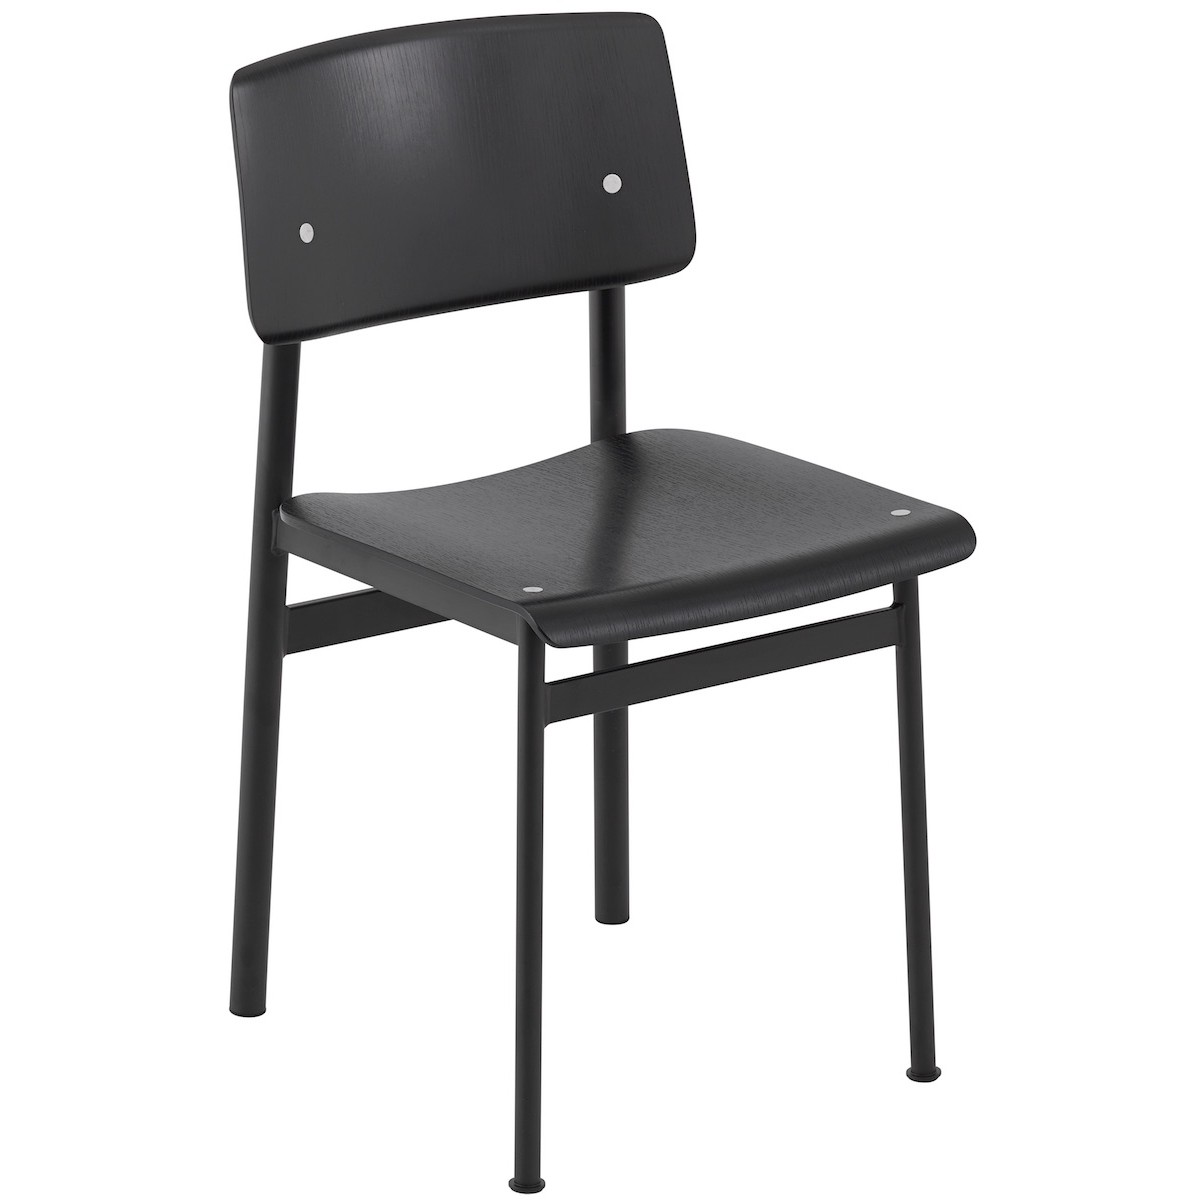 black / black - Loft chair without armrest